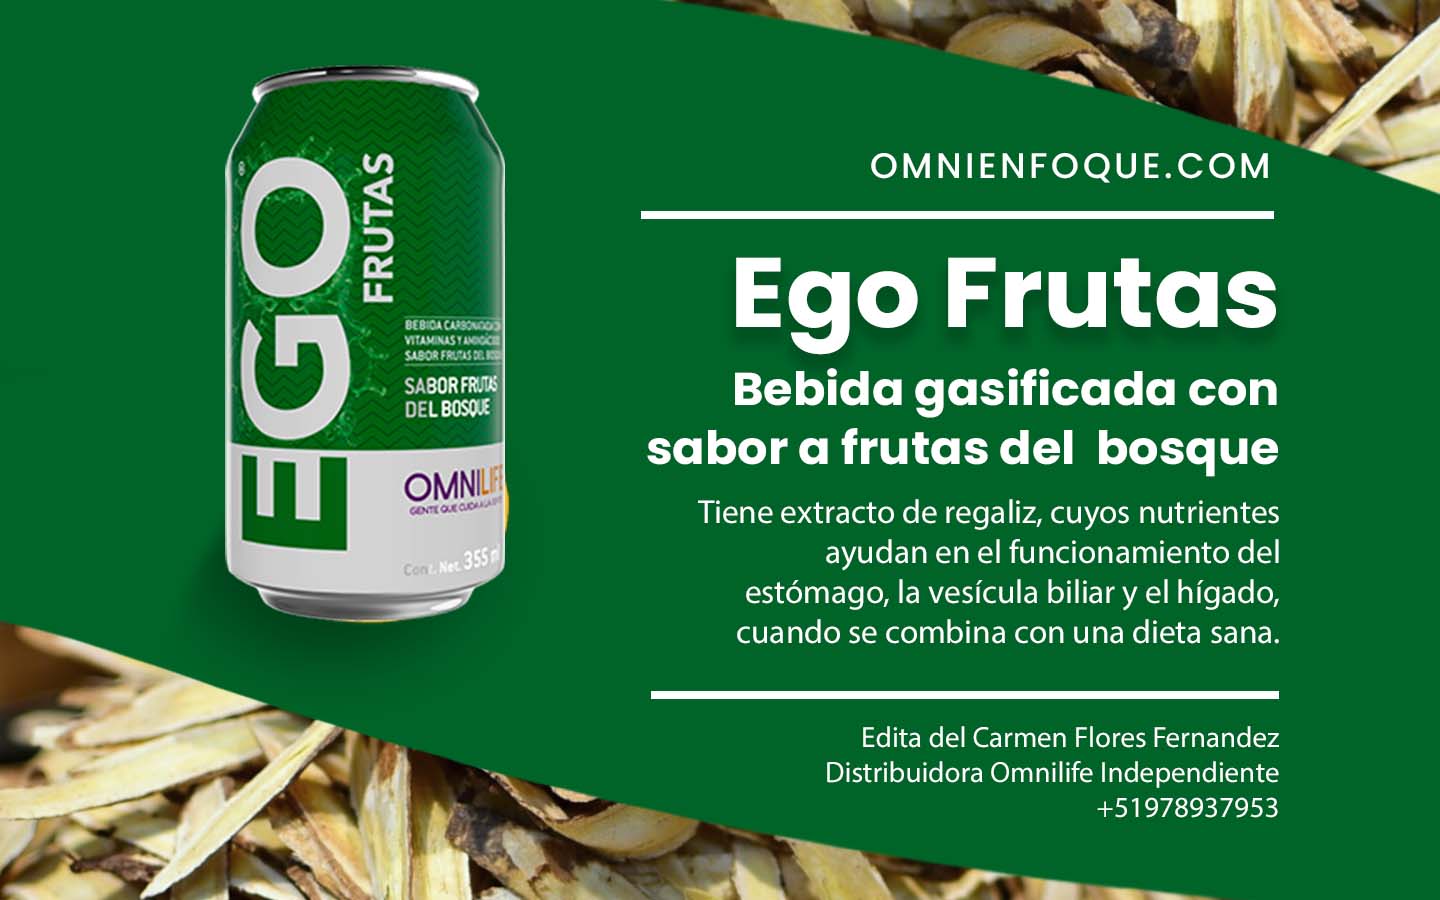 Ego Frutas del Bosque de Omnilife es una bebida gasificada ayuda en el higado